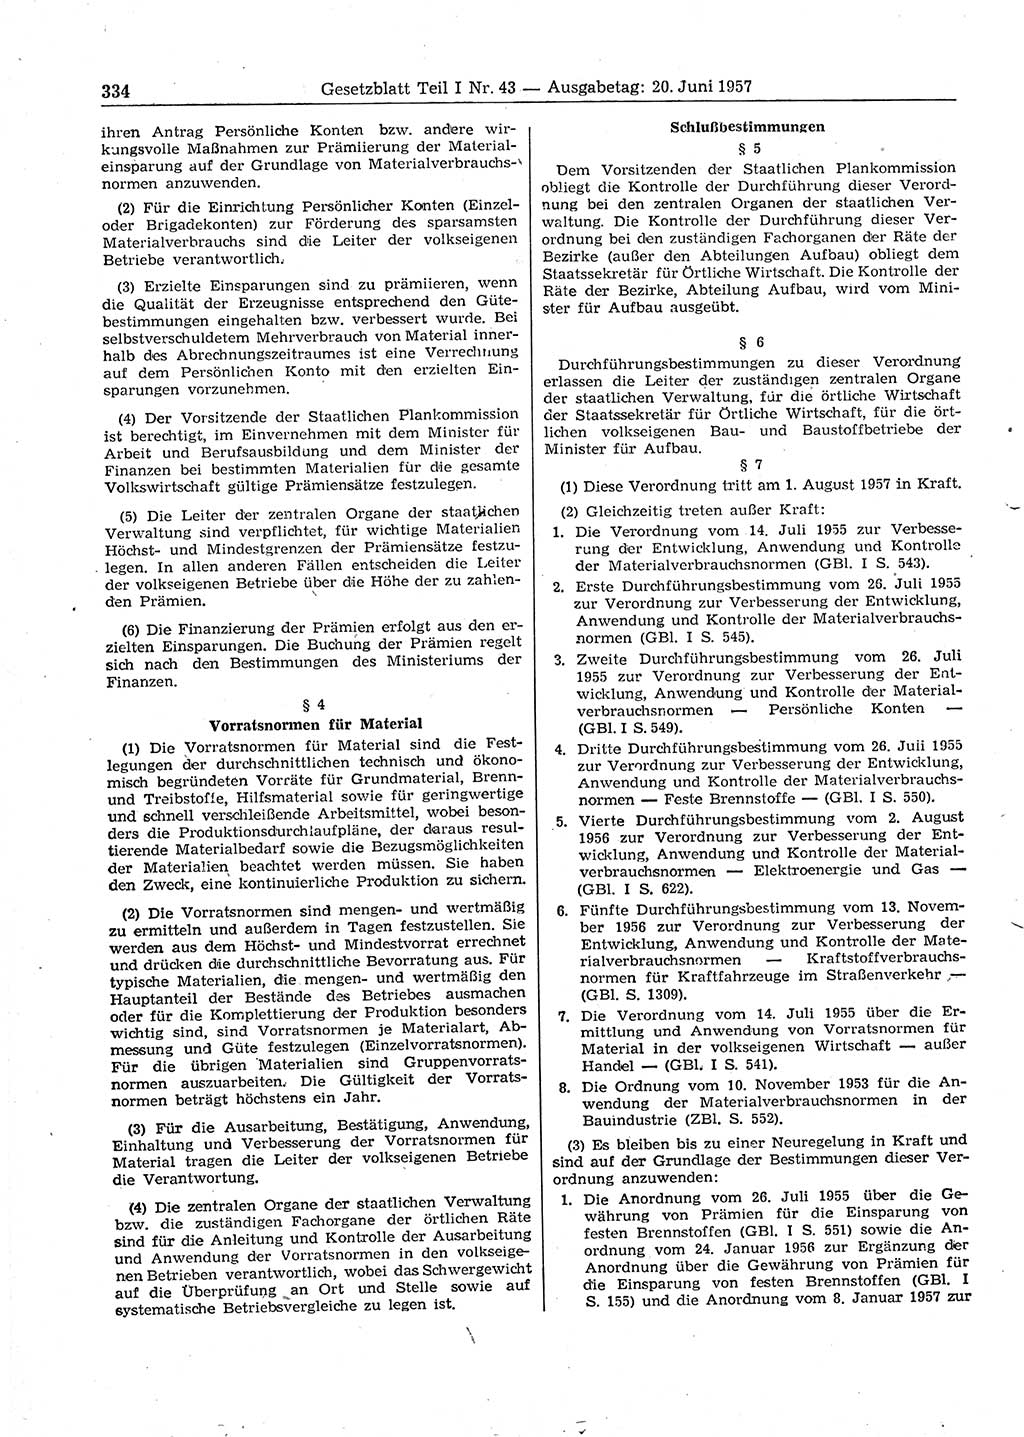 Gesetzblatt (GBl.) der Deutschen Demokratischen Republik (DDR) Teil Ⅰ 1957, Seite 334 (GBl. DDR Ⅰ 1957, S. 334)